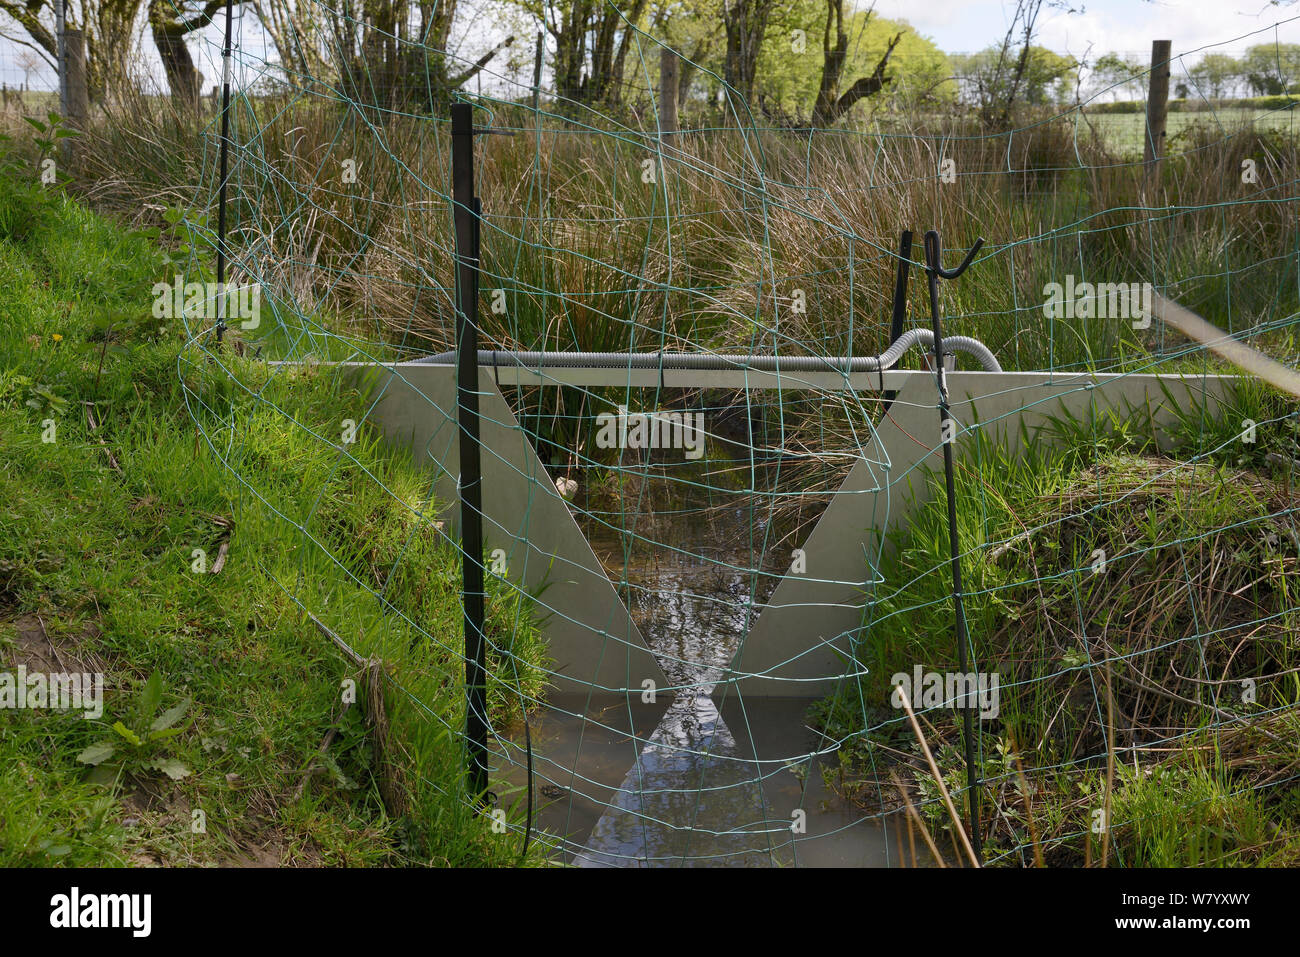 V-dam estación de medición de flujo de agua y la supervisión de la calidad por encima de una serie de presas construidas por castores euroasiático (Castor fiber) dentro del gran recinto, Devon Proyecto Castor, Devon Wildlife Trust, Devon, Reino Unido, Mayo. Foto de stock